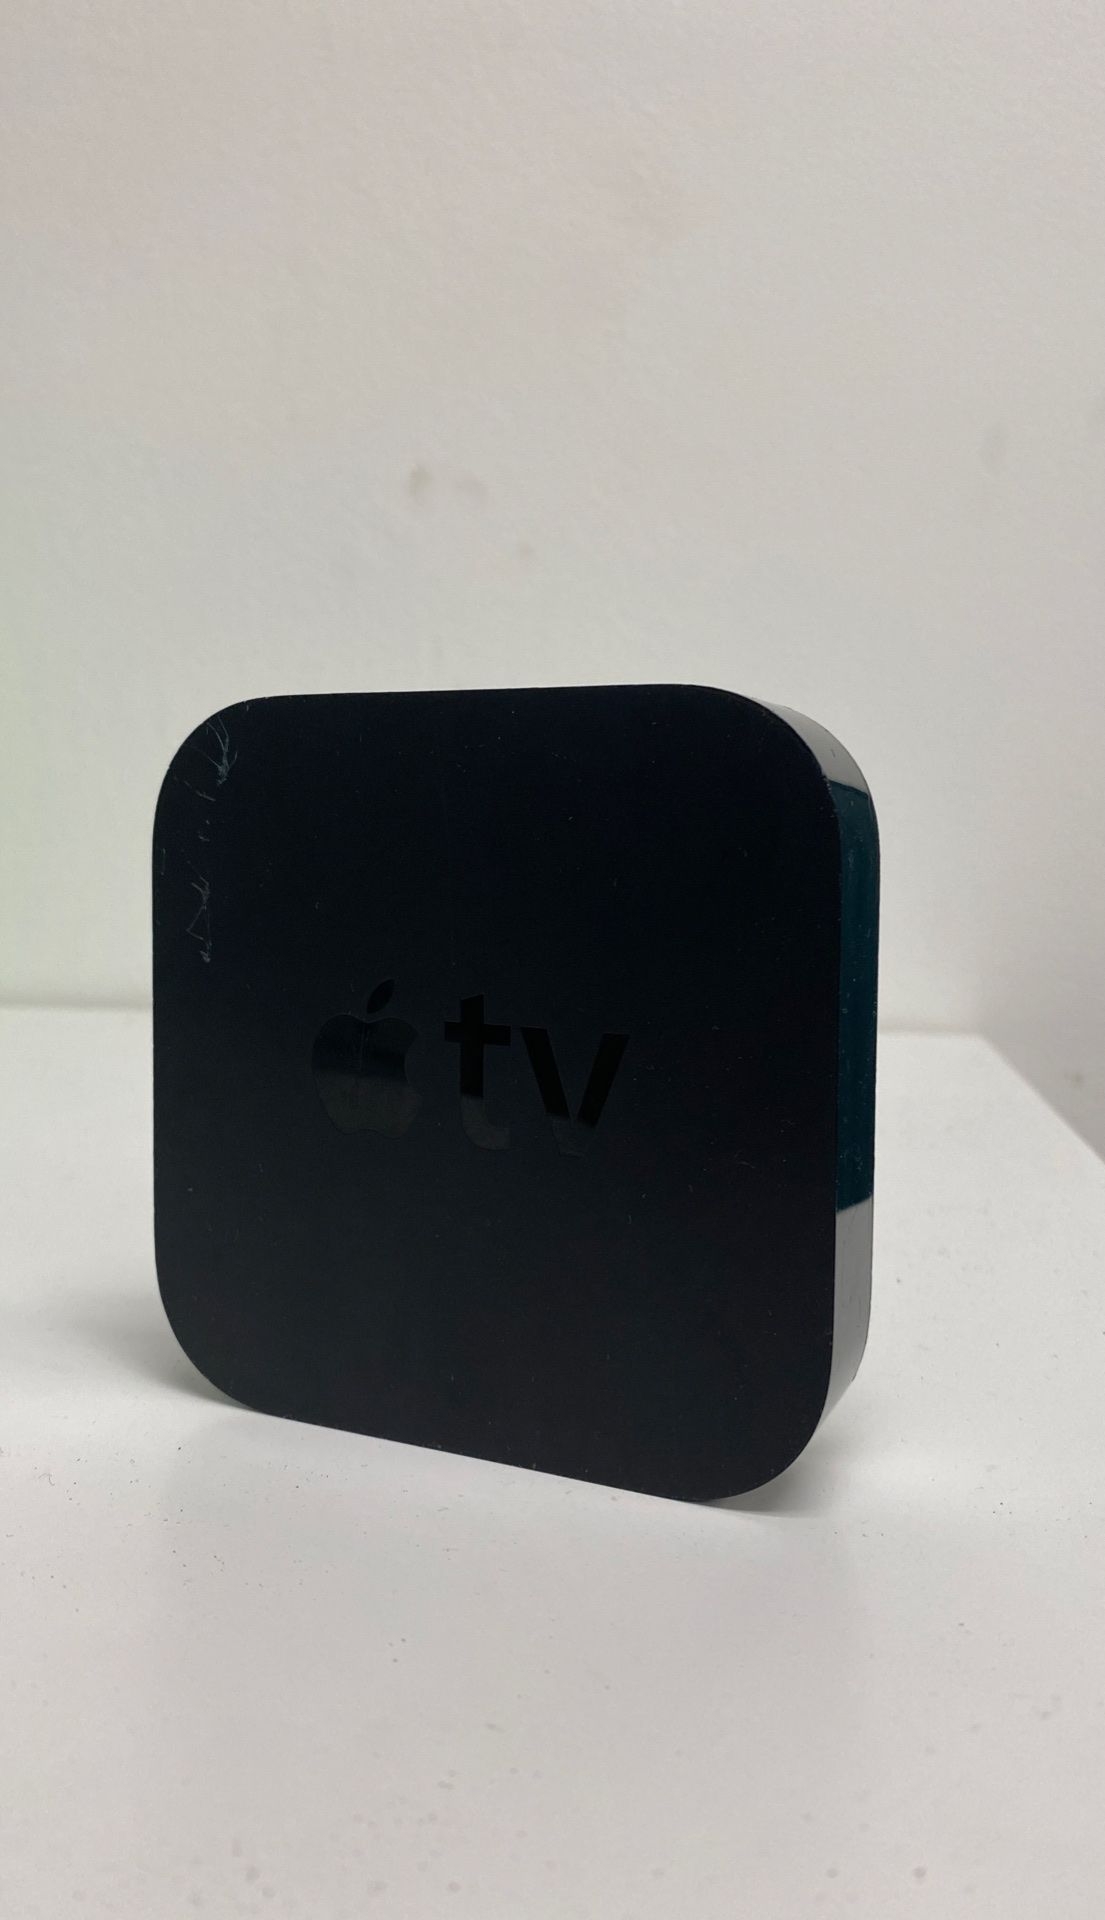 Apple TV (3rd Gen) A1469